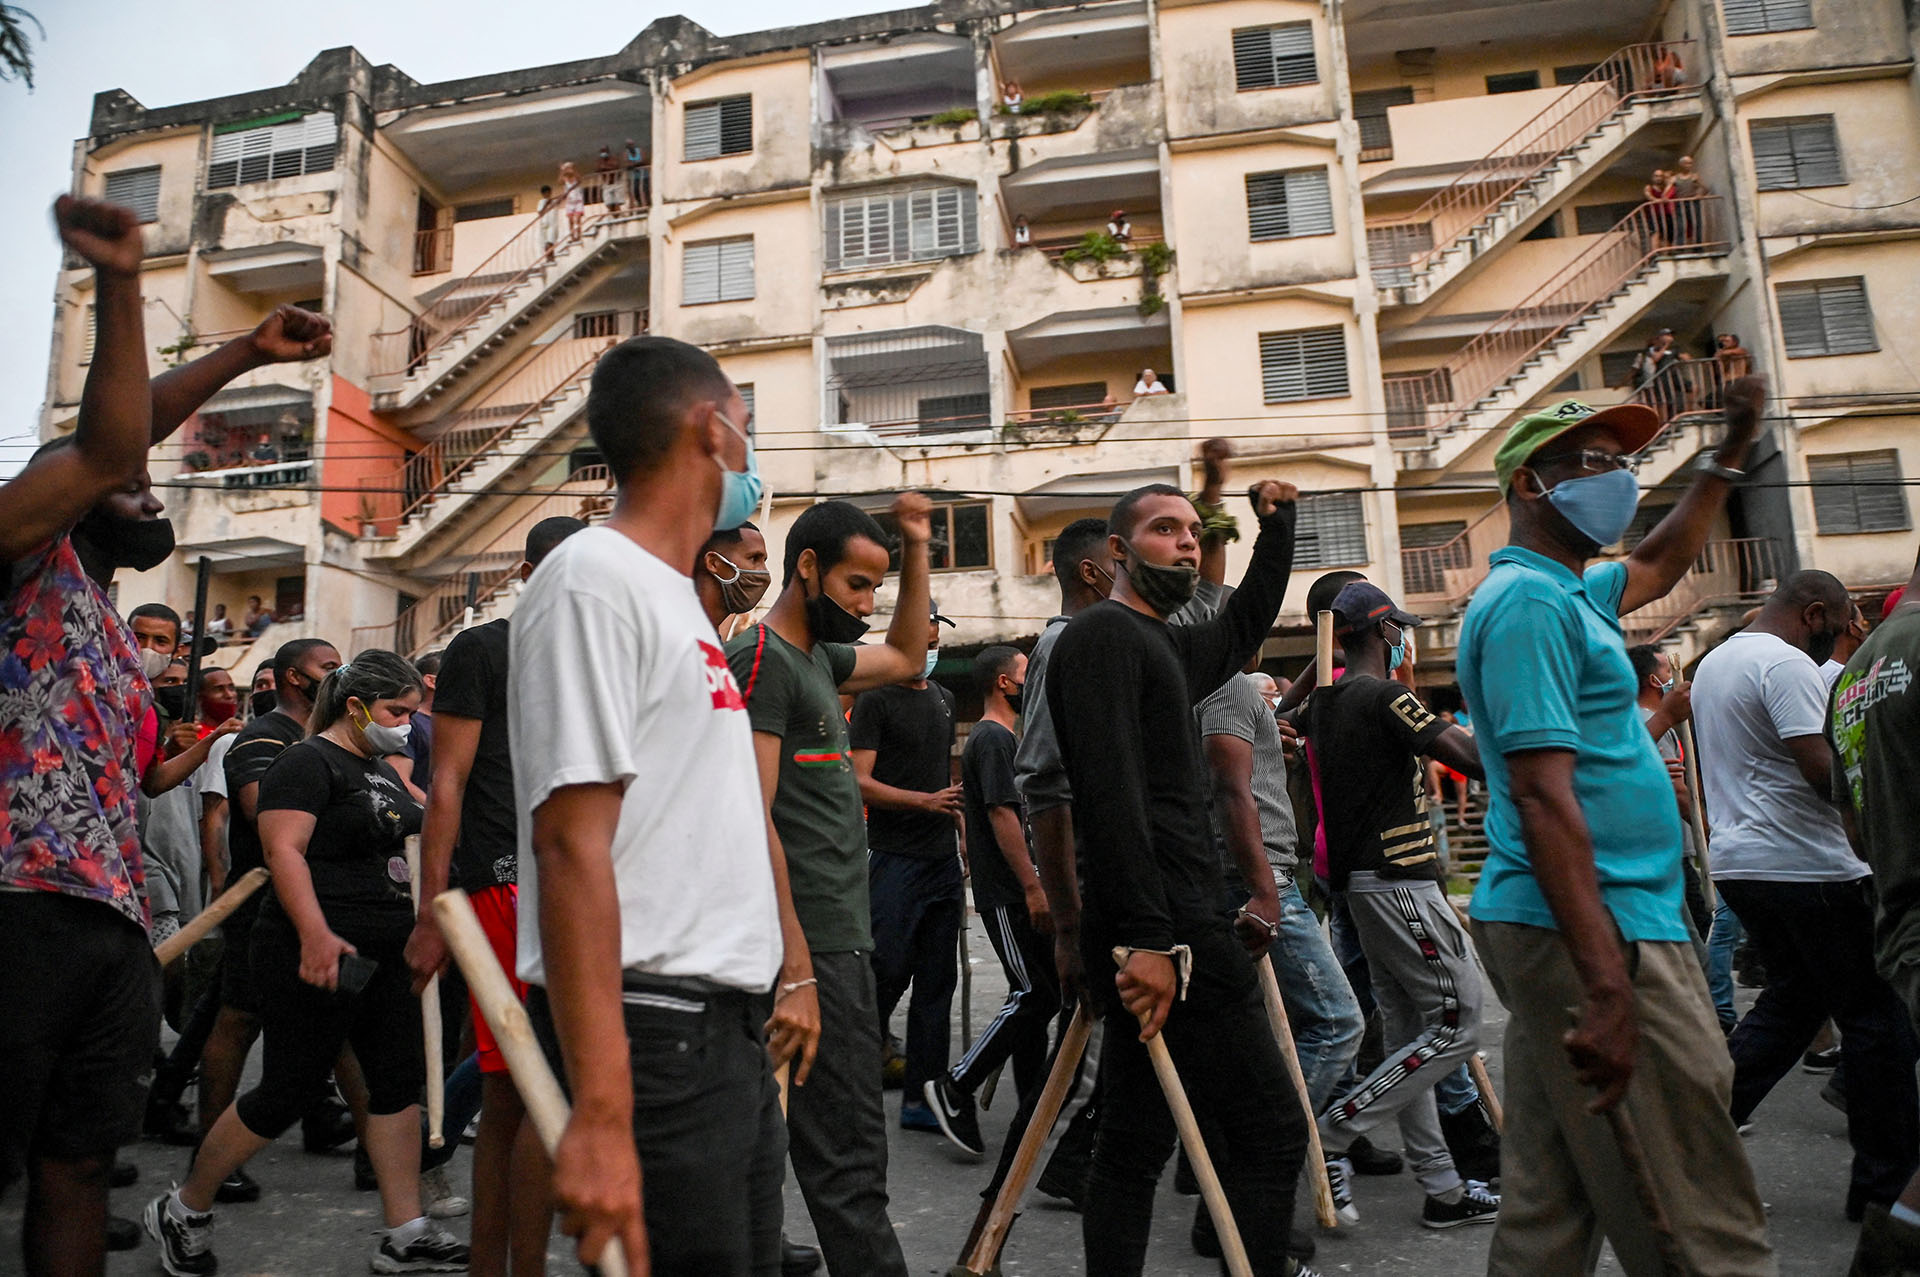 Las filas "revolucionarias" marcharon por zonas residenciales cargando palos